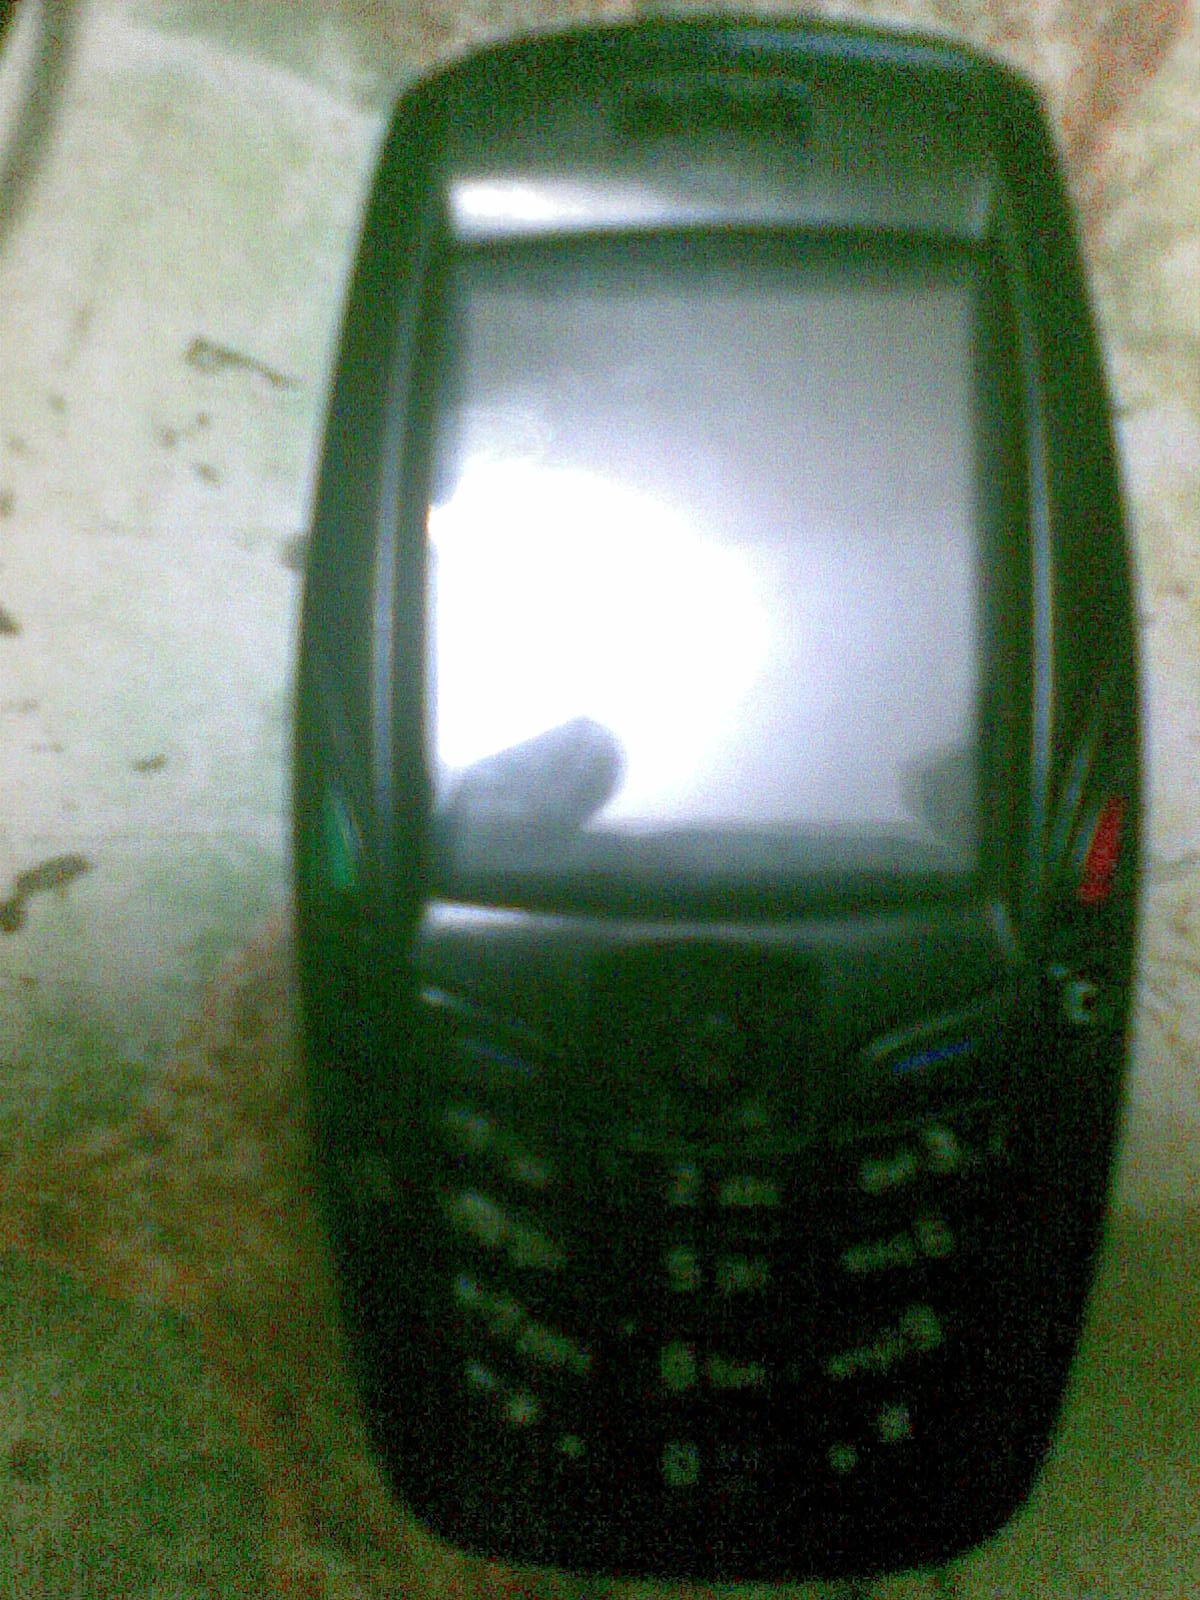 Nokia 6600 large image 1